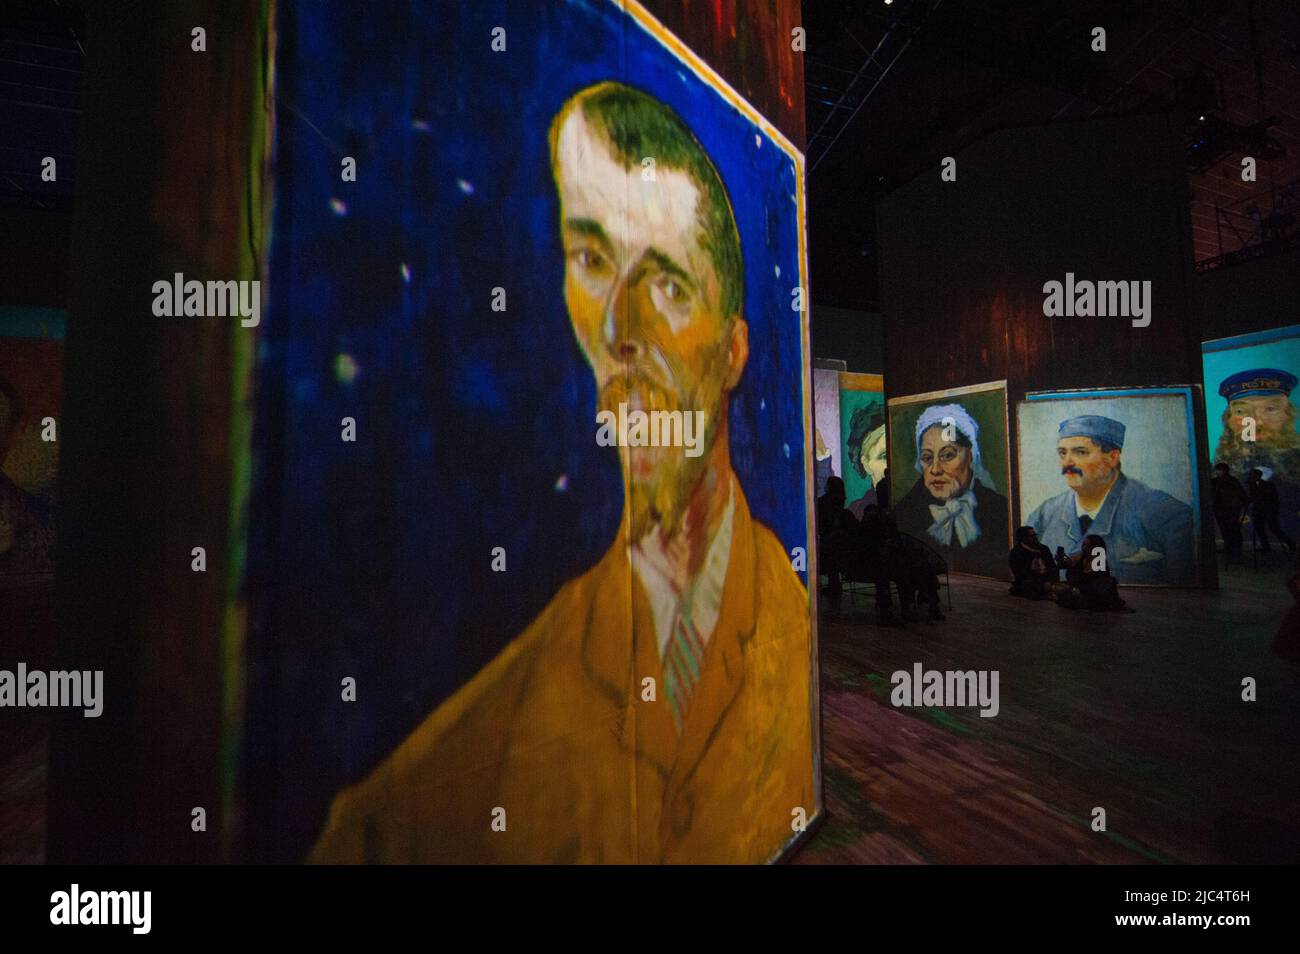 Le persone prendono parte alla coinvolgente mostra dell'esperienza "Beyond Van Gogh" di Vincent Van Gogh, che raccoglie le sue opere d'arte più importanti, a Bogo Foto Stock